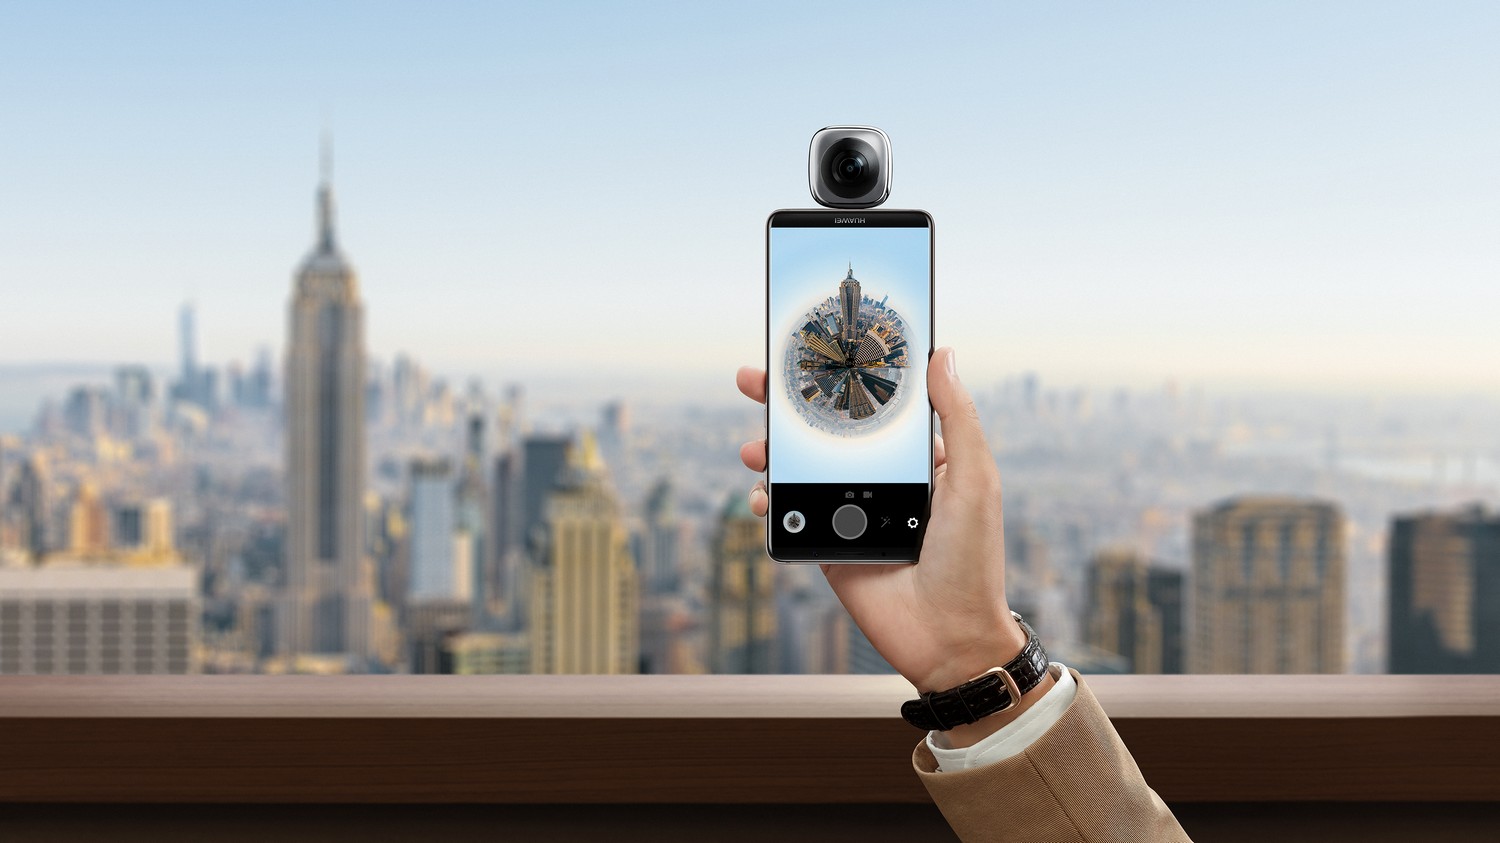 Huawei Mate 10 Pro camera